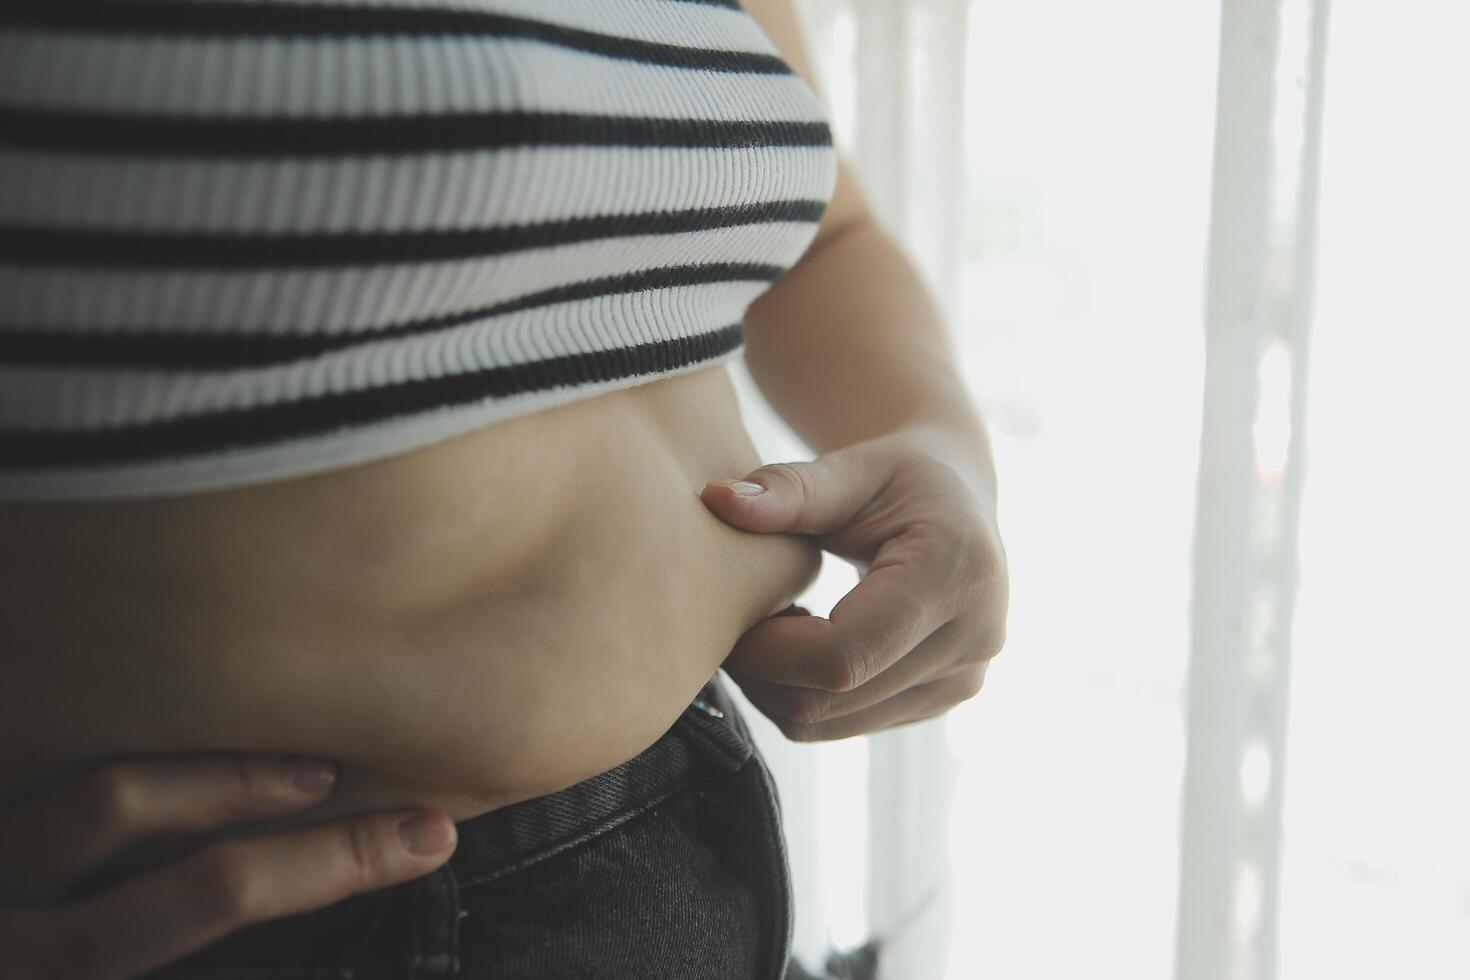 femmes corps graisse ventre. obèse femme main en portant excessif ventre graisse. régime mode de vie concept à réduire ventre et forme en haut en bonne santé estomac muscle. photo